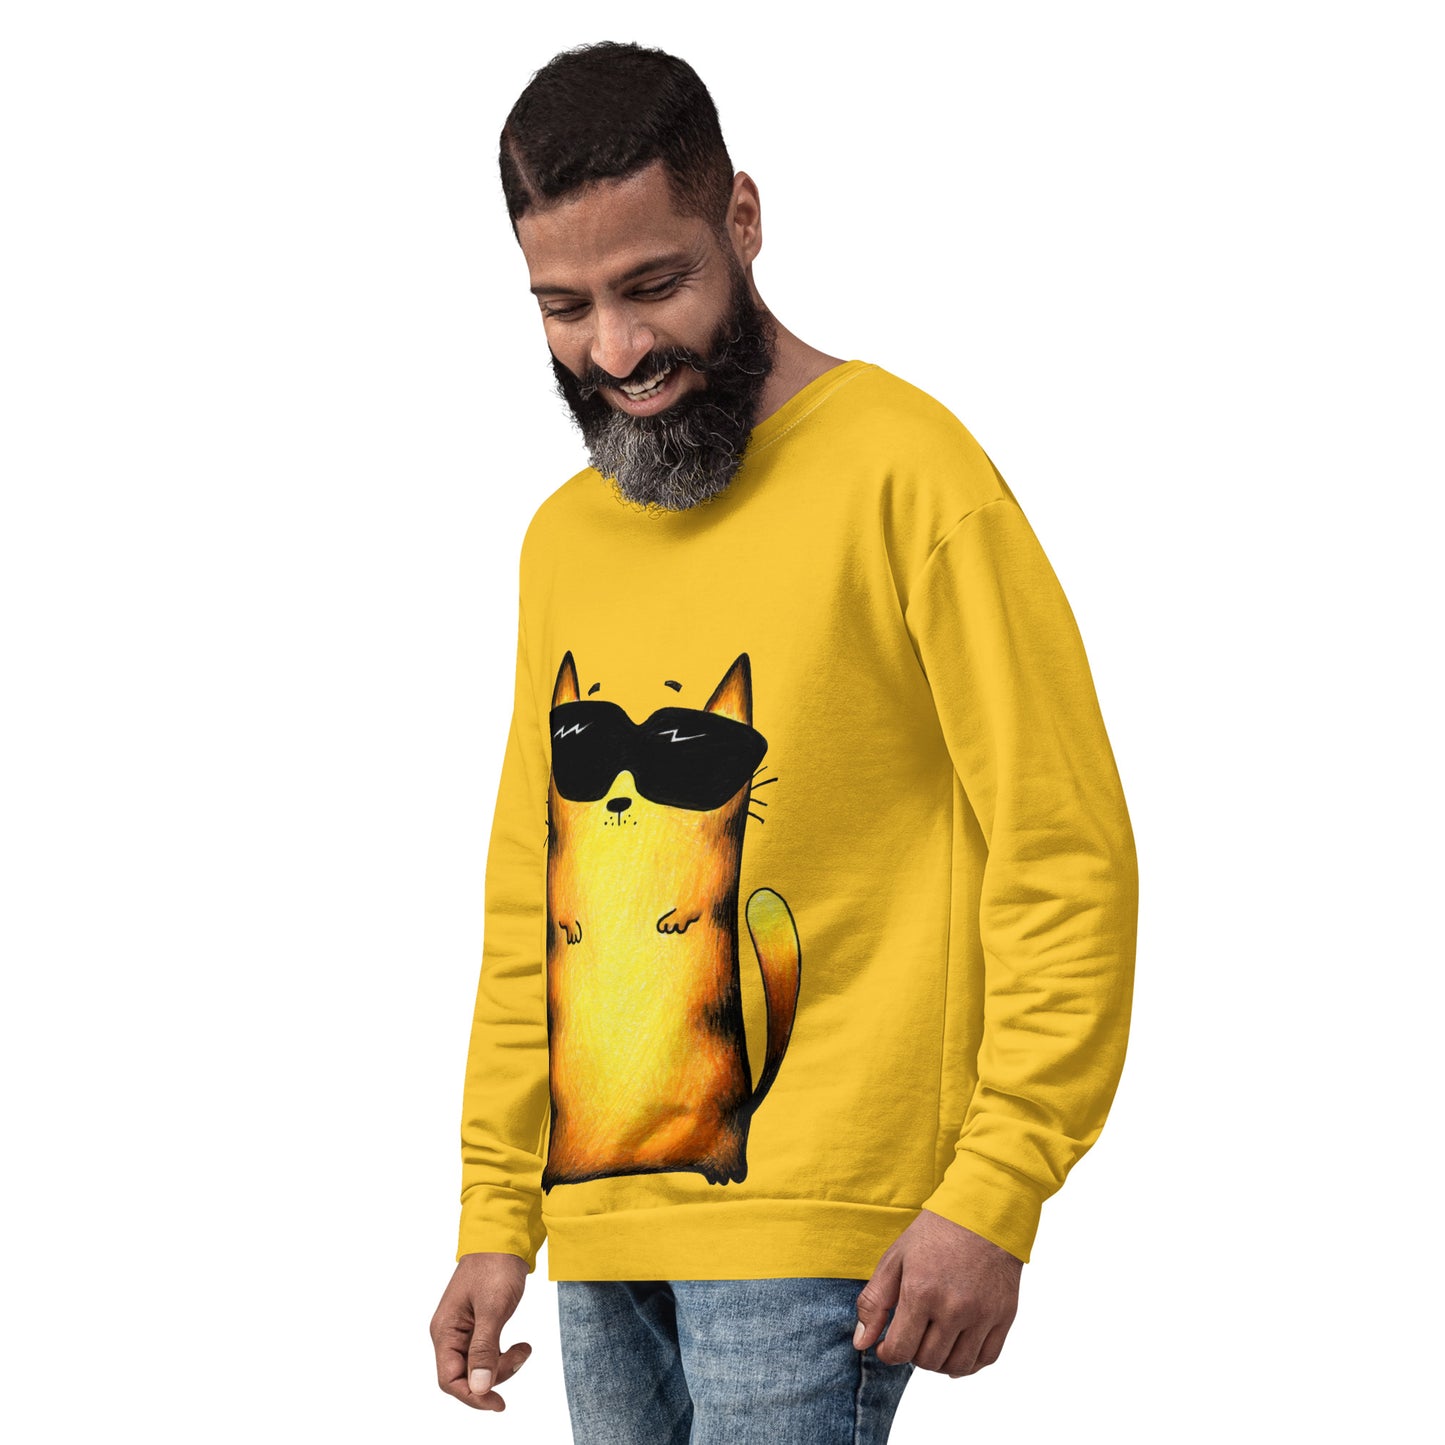 Men's Sweatshirt "Yellow Cat"